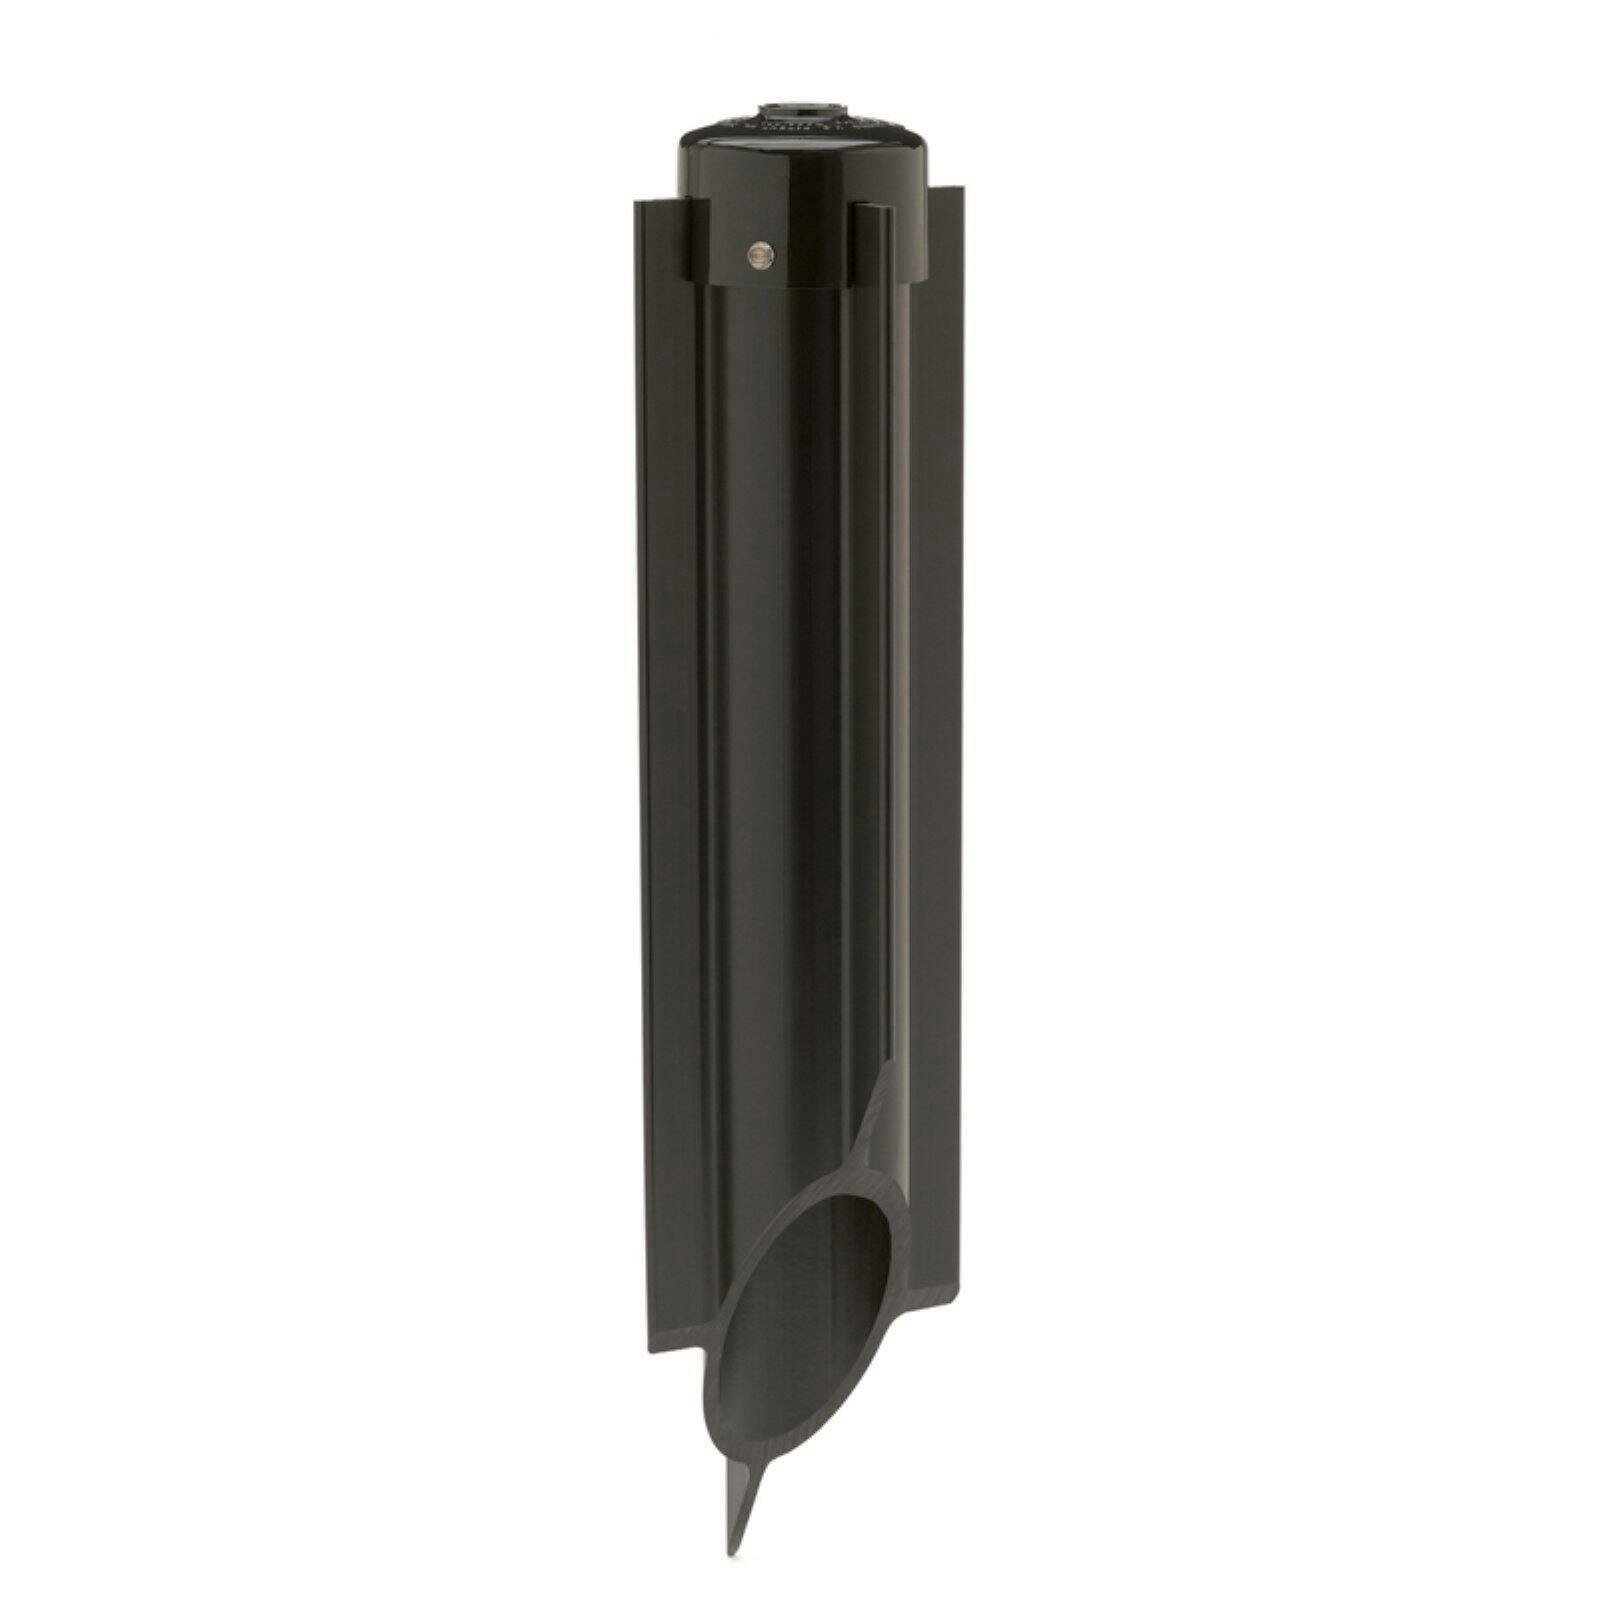 Modern Black PVC 120V Power Post for Outdoor Lighting